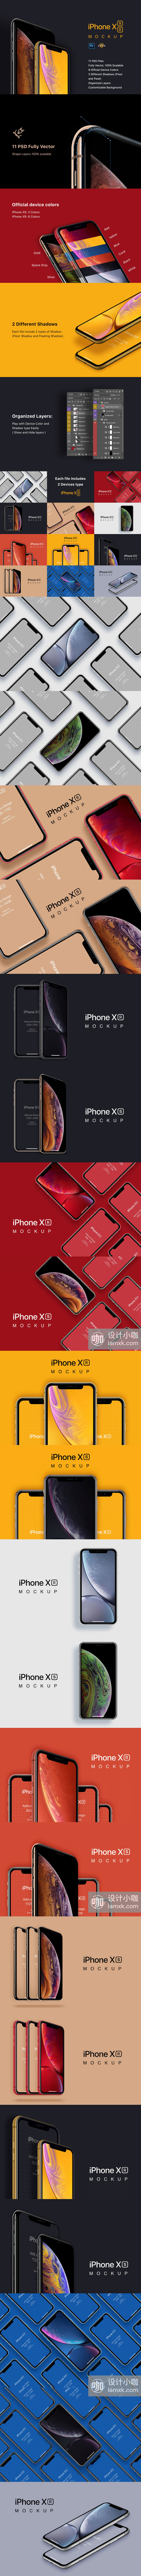 非凡图库下午茶：11种完美的不同的iPhone XS 和 XR 应用APP设计样机排列效果合集[PSD]